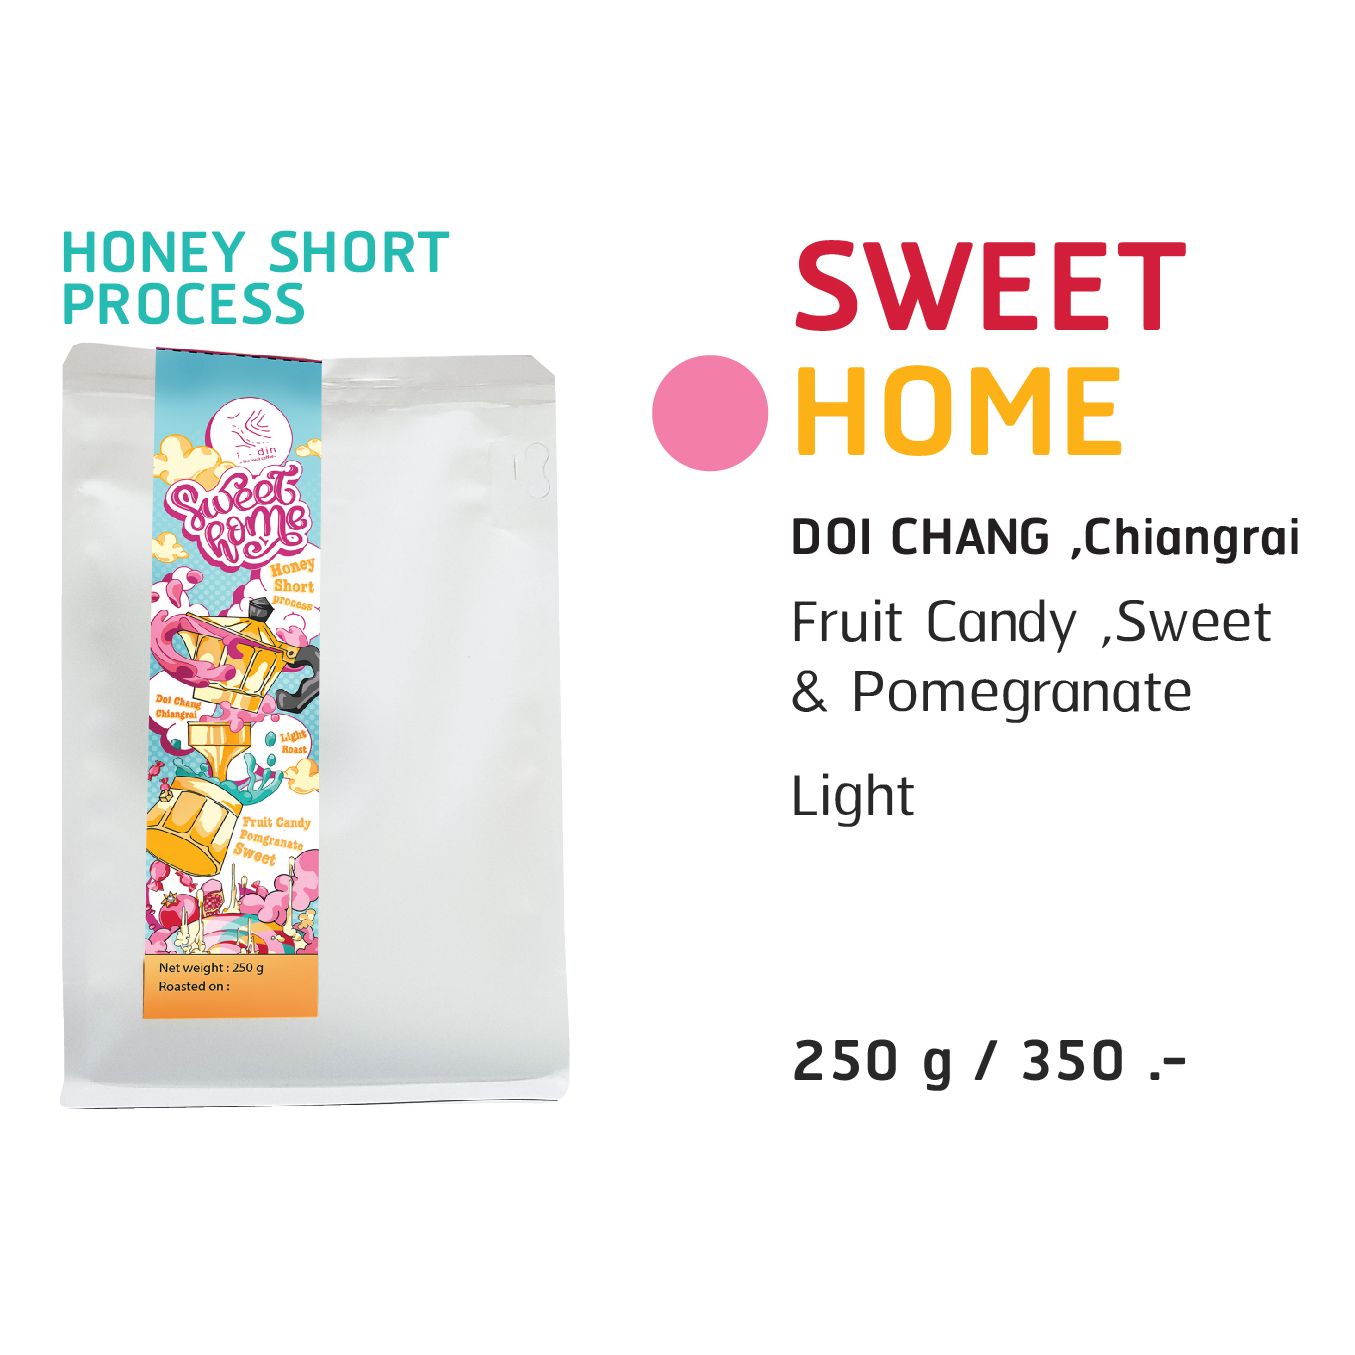 SWEET HOME เมล็ดกาแฟคั่ว ดอยช้าง,เชียงราย อราบิก้าแท้ 100% (Honey Short Process)